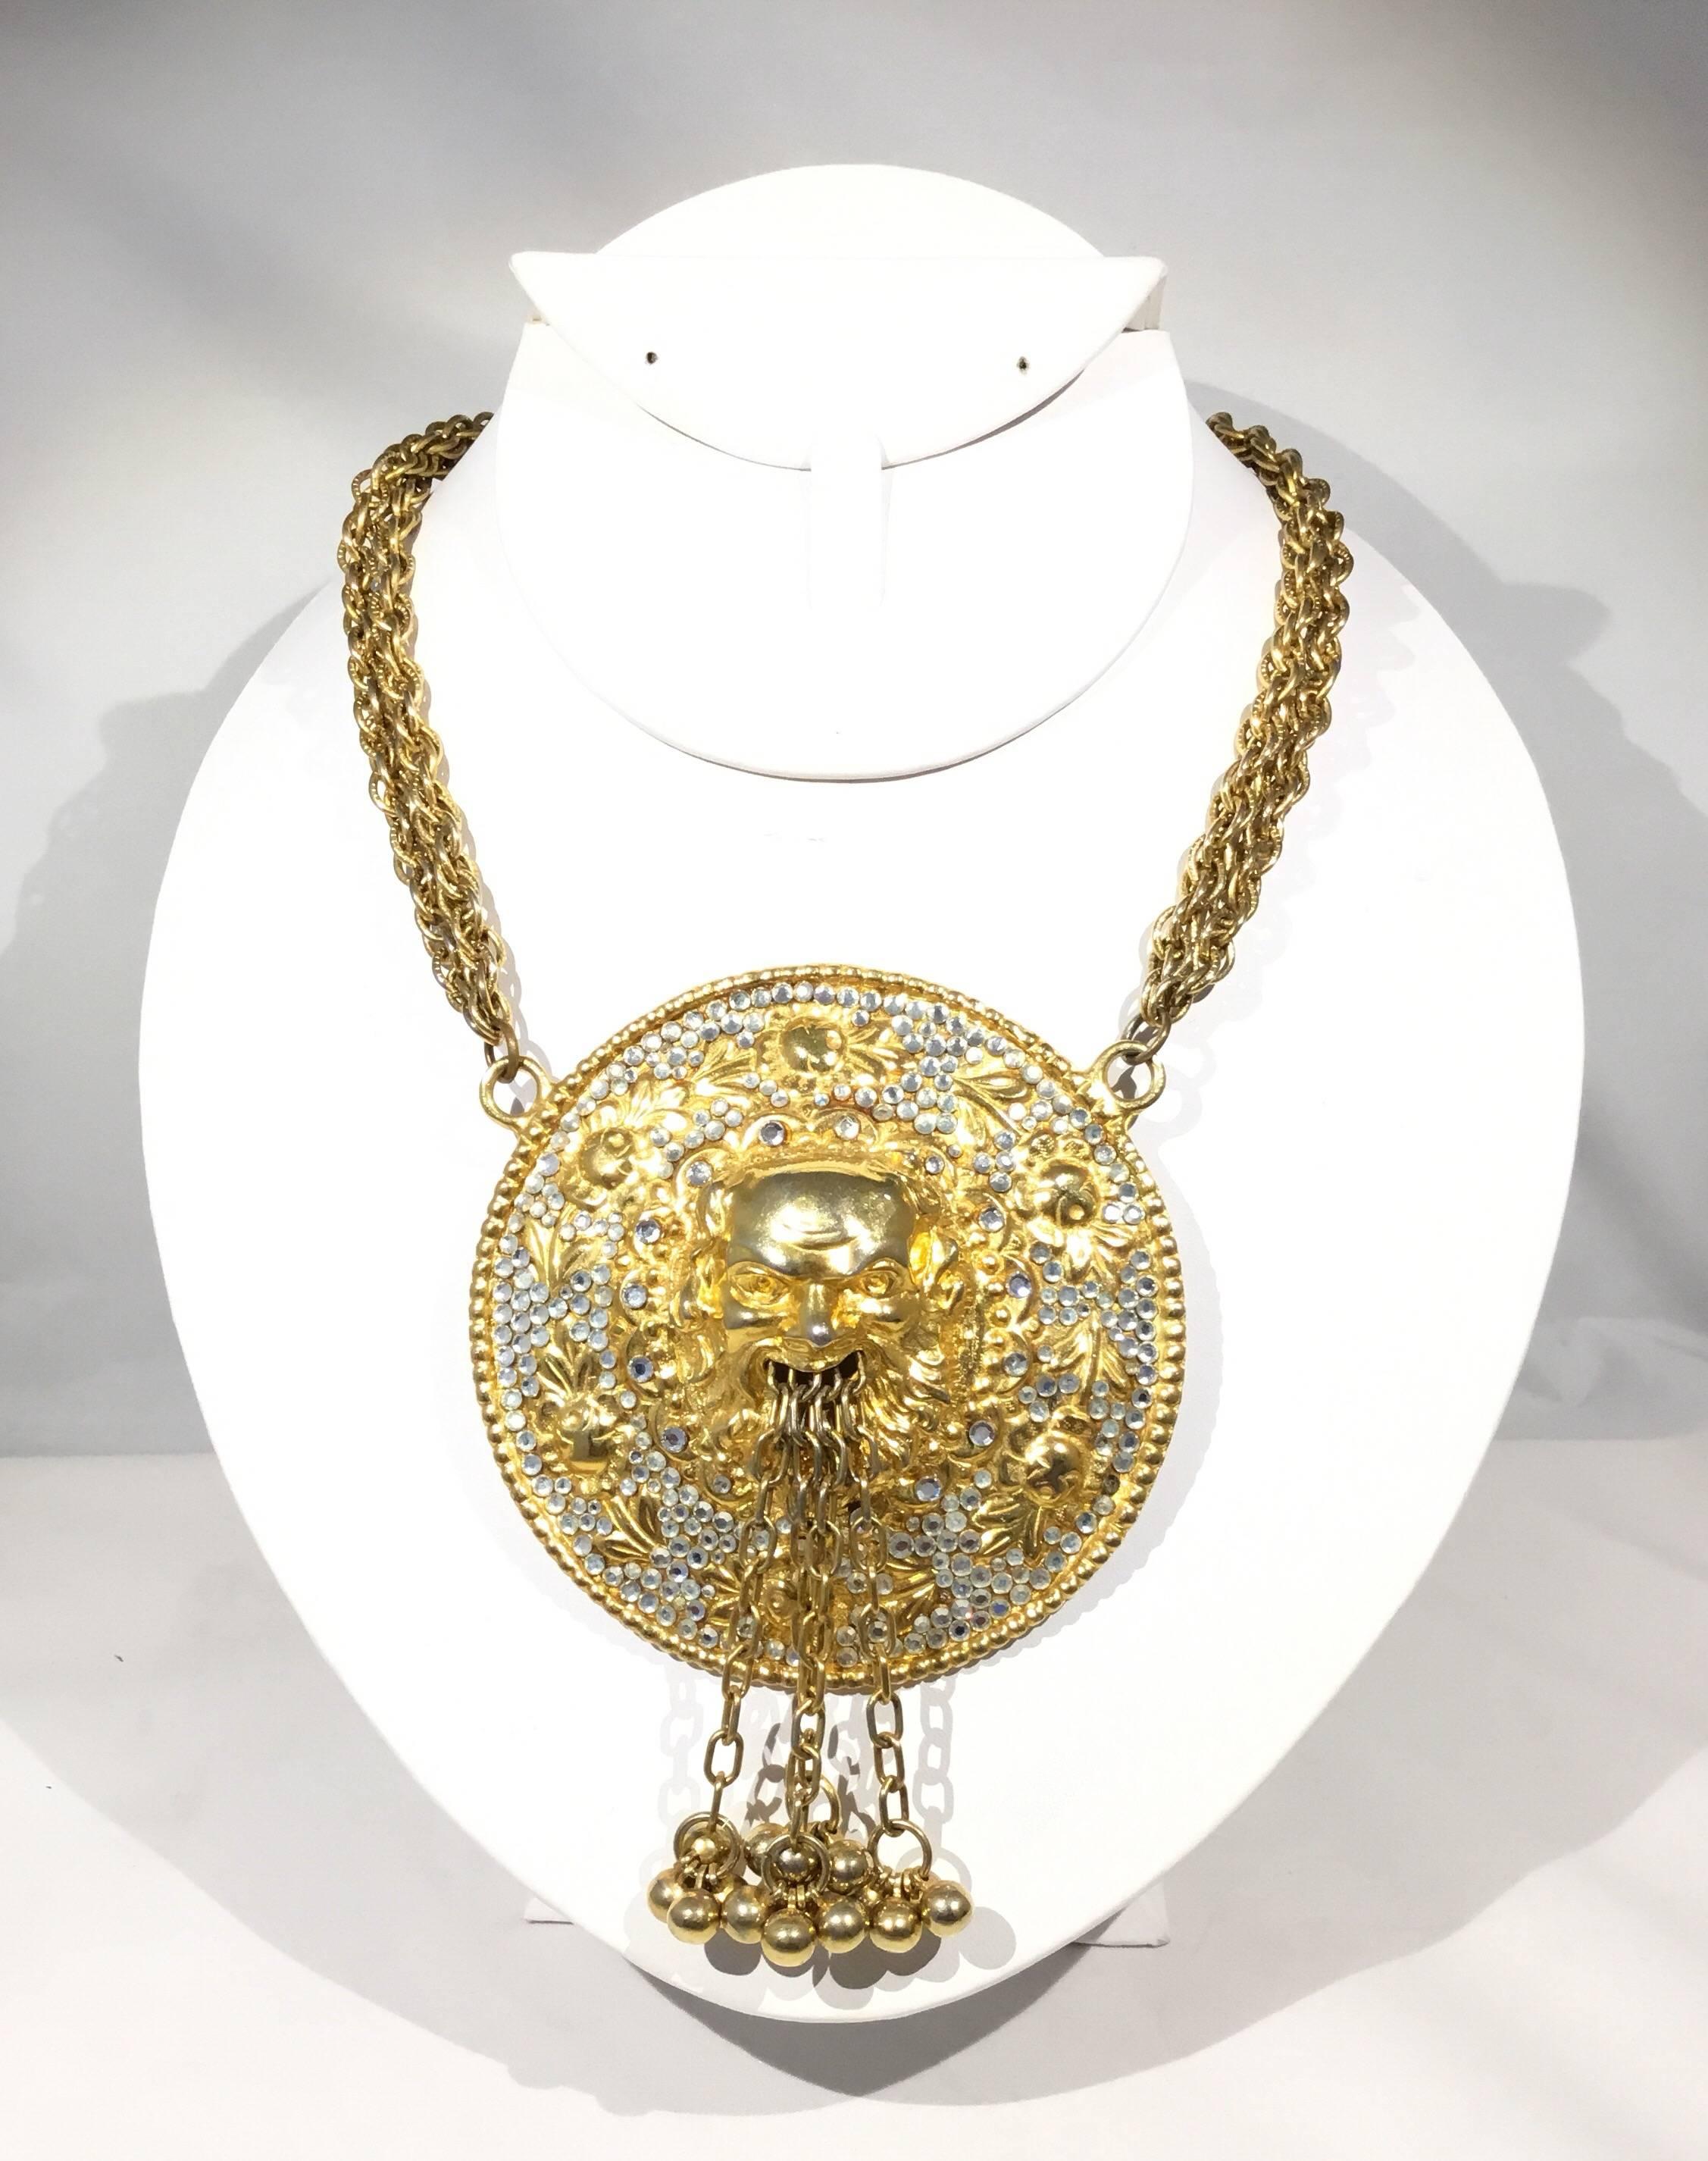 Die Judith Leiber Halskette Art to wear zeigt ein massives Medaillon, das Bachhus, den römischen Gott des Weins, darstellt. Aus dem Mund kommen baumelnde Perlenkugeln, die an den Rändern mit Strasssteinen besetzt sind. Doppelstrangige goldfarbene